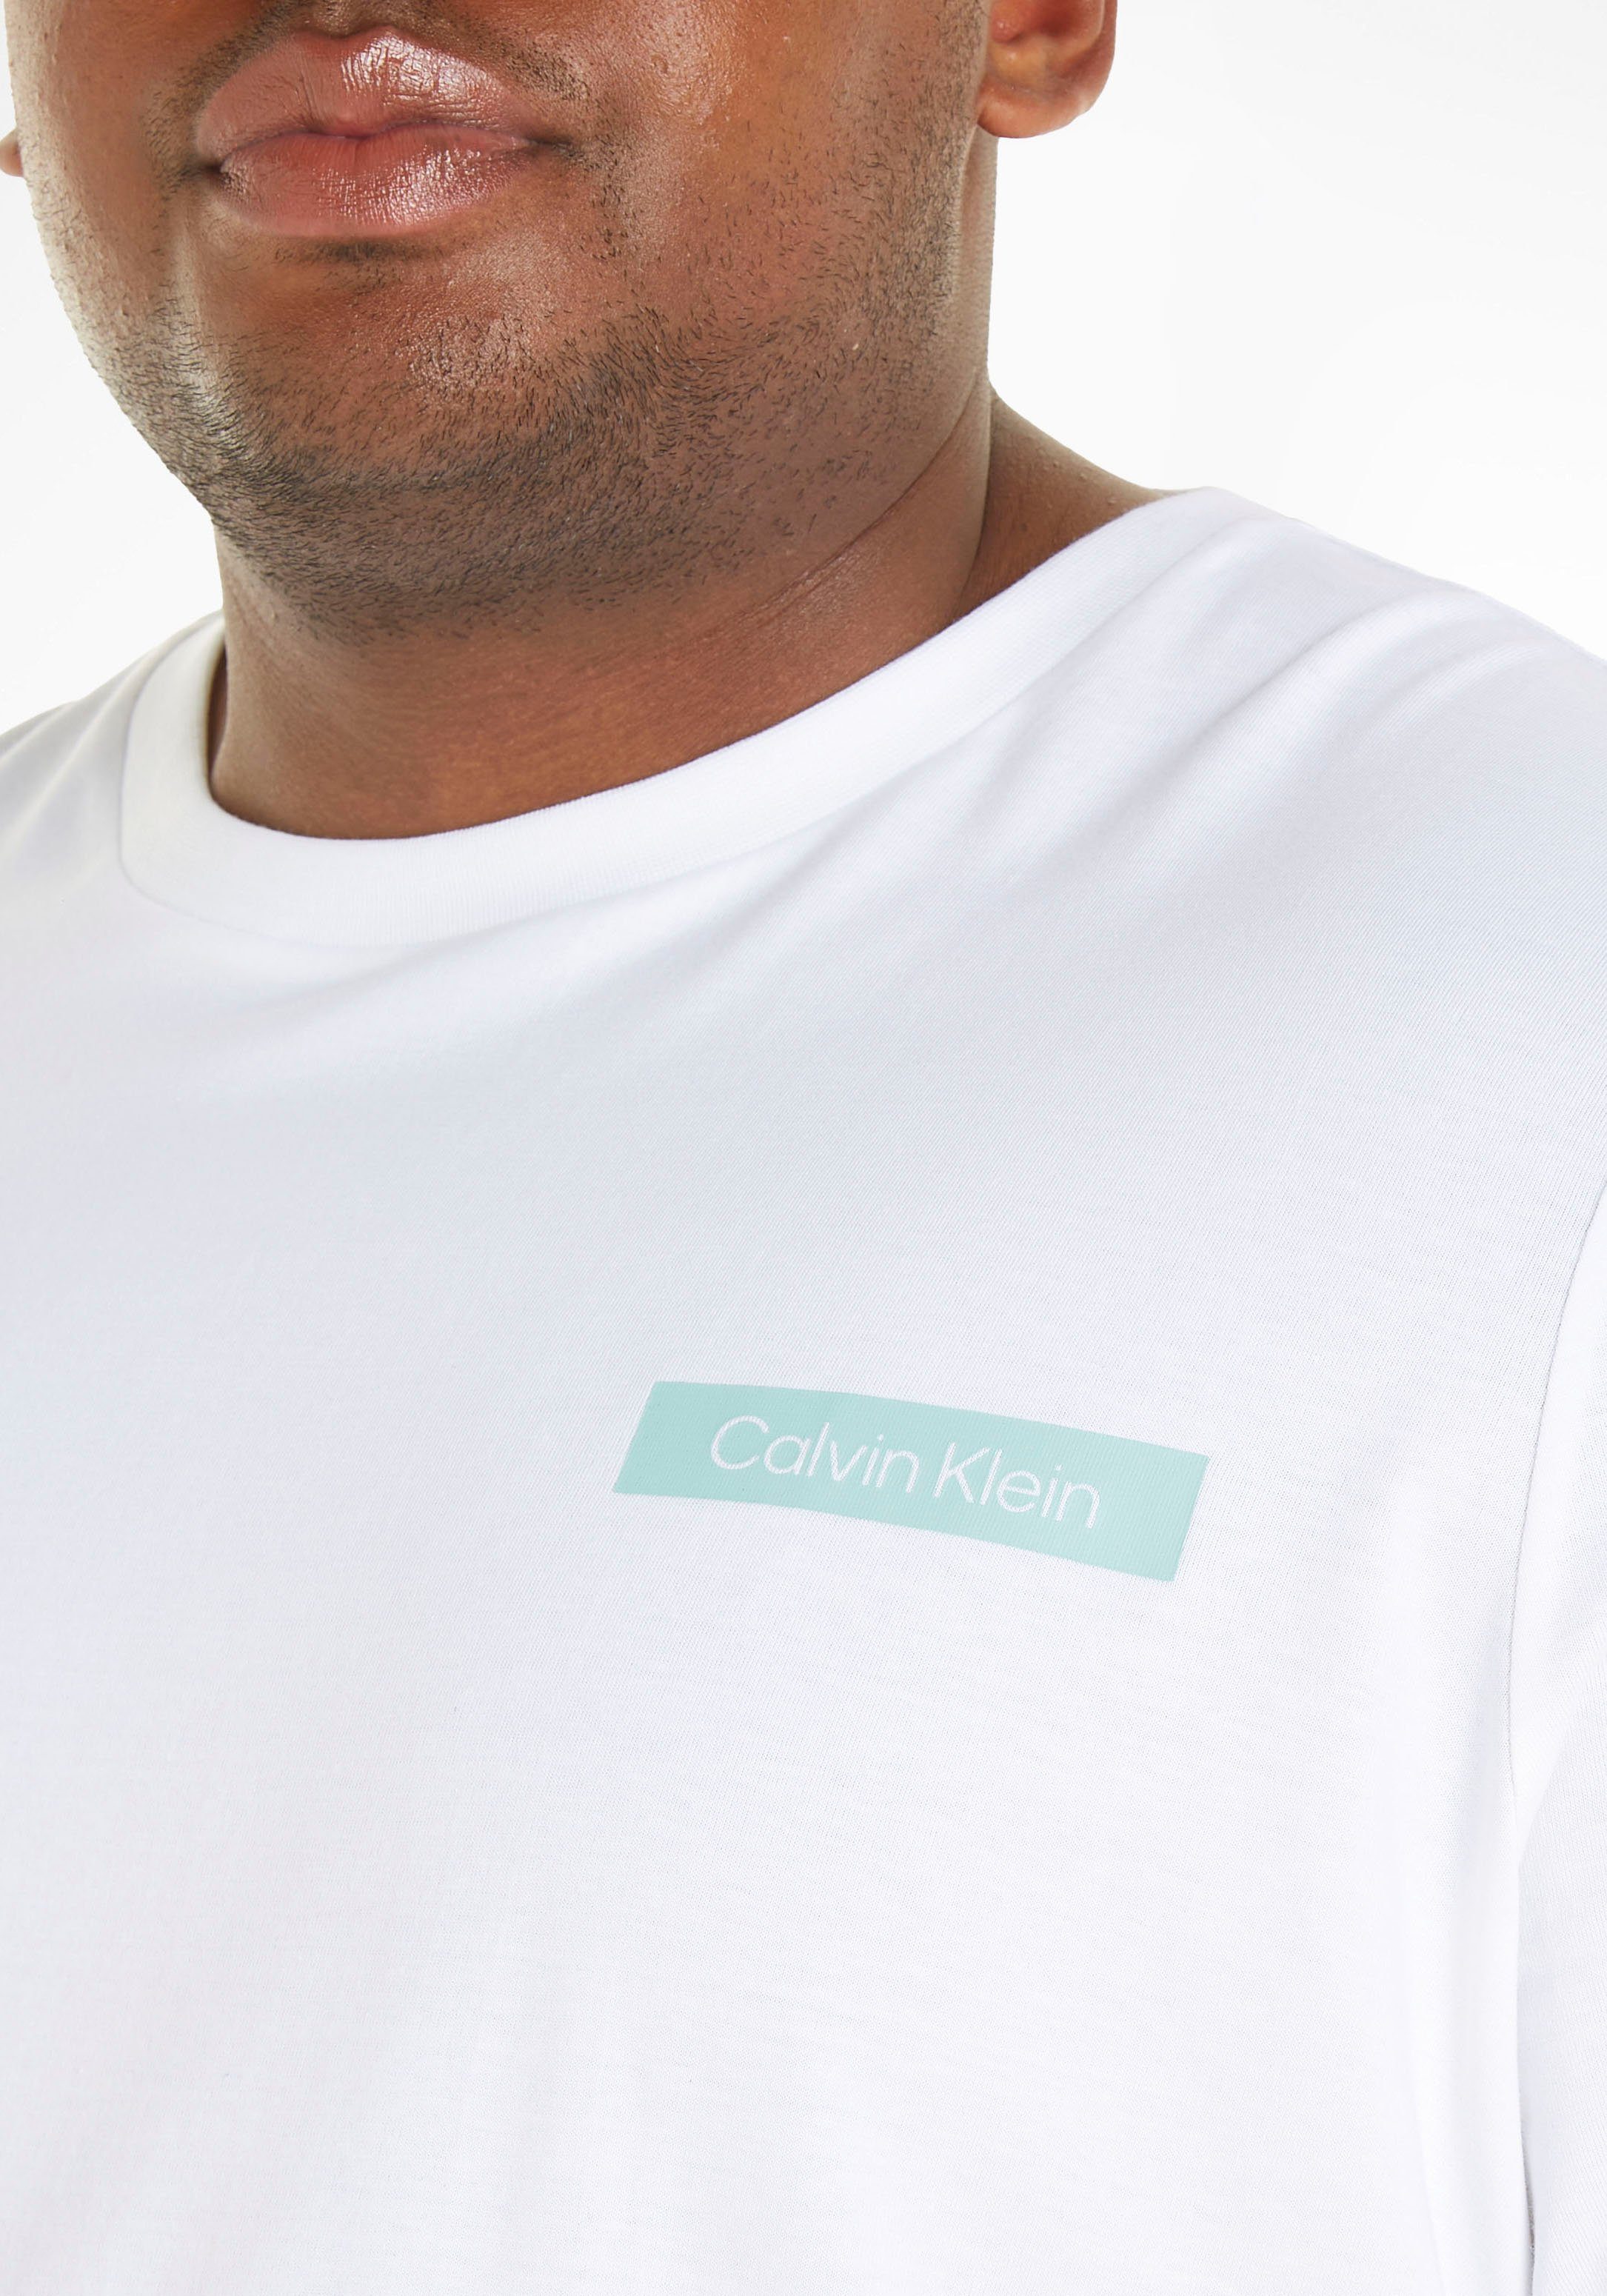 Calvin Klein weiß Logoschriftzug Big&Tall mit Brust der auf T-Shirt